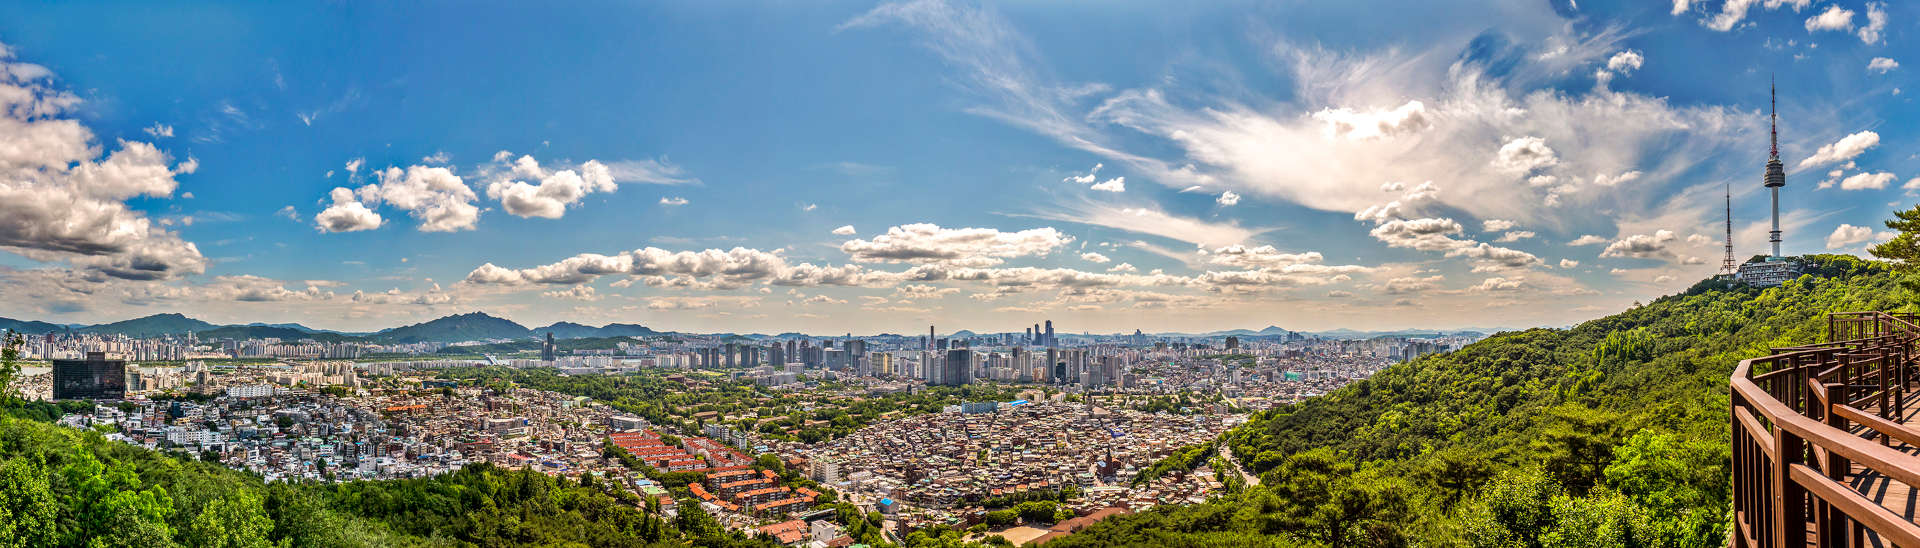 맑은 날 높은 산 정상에서 서울 도시가 보이는 풍경